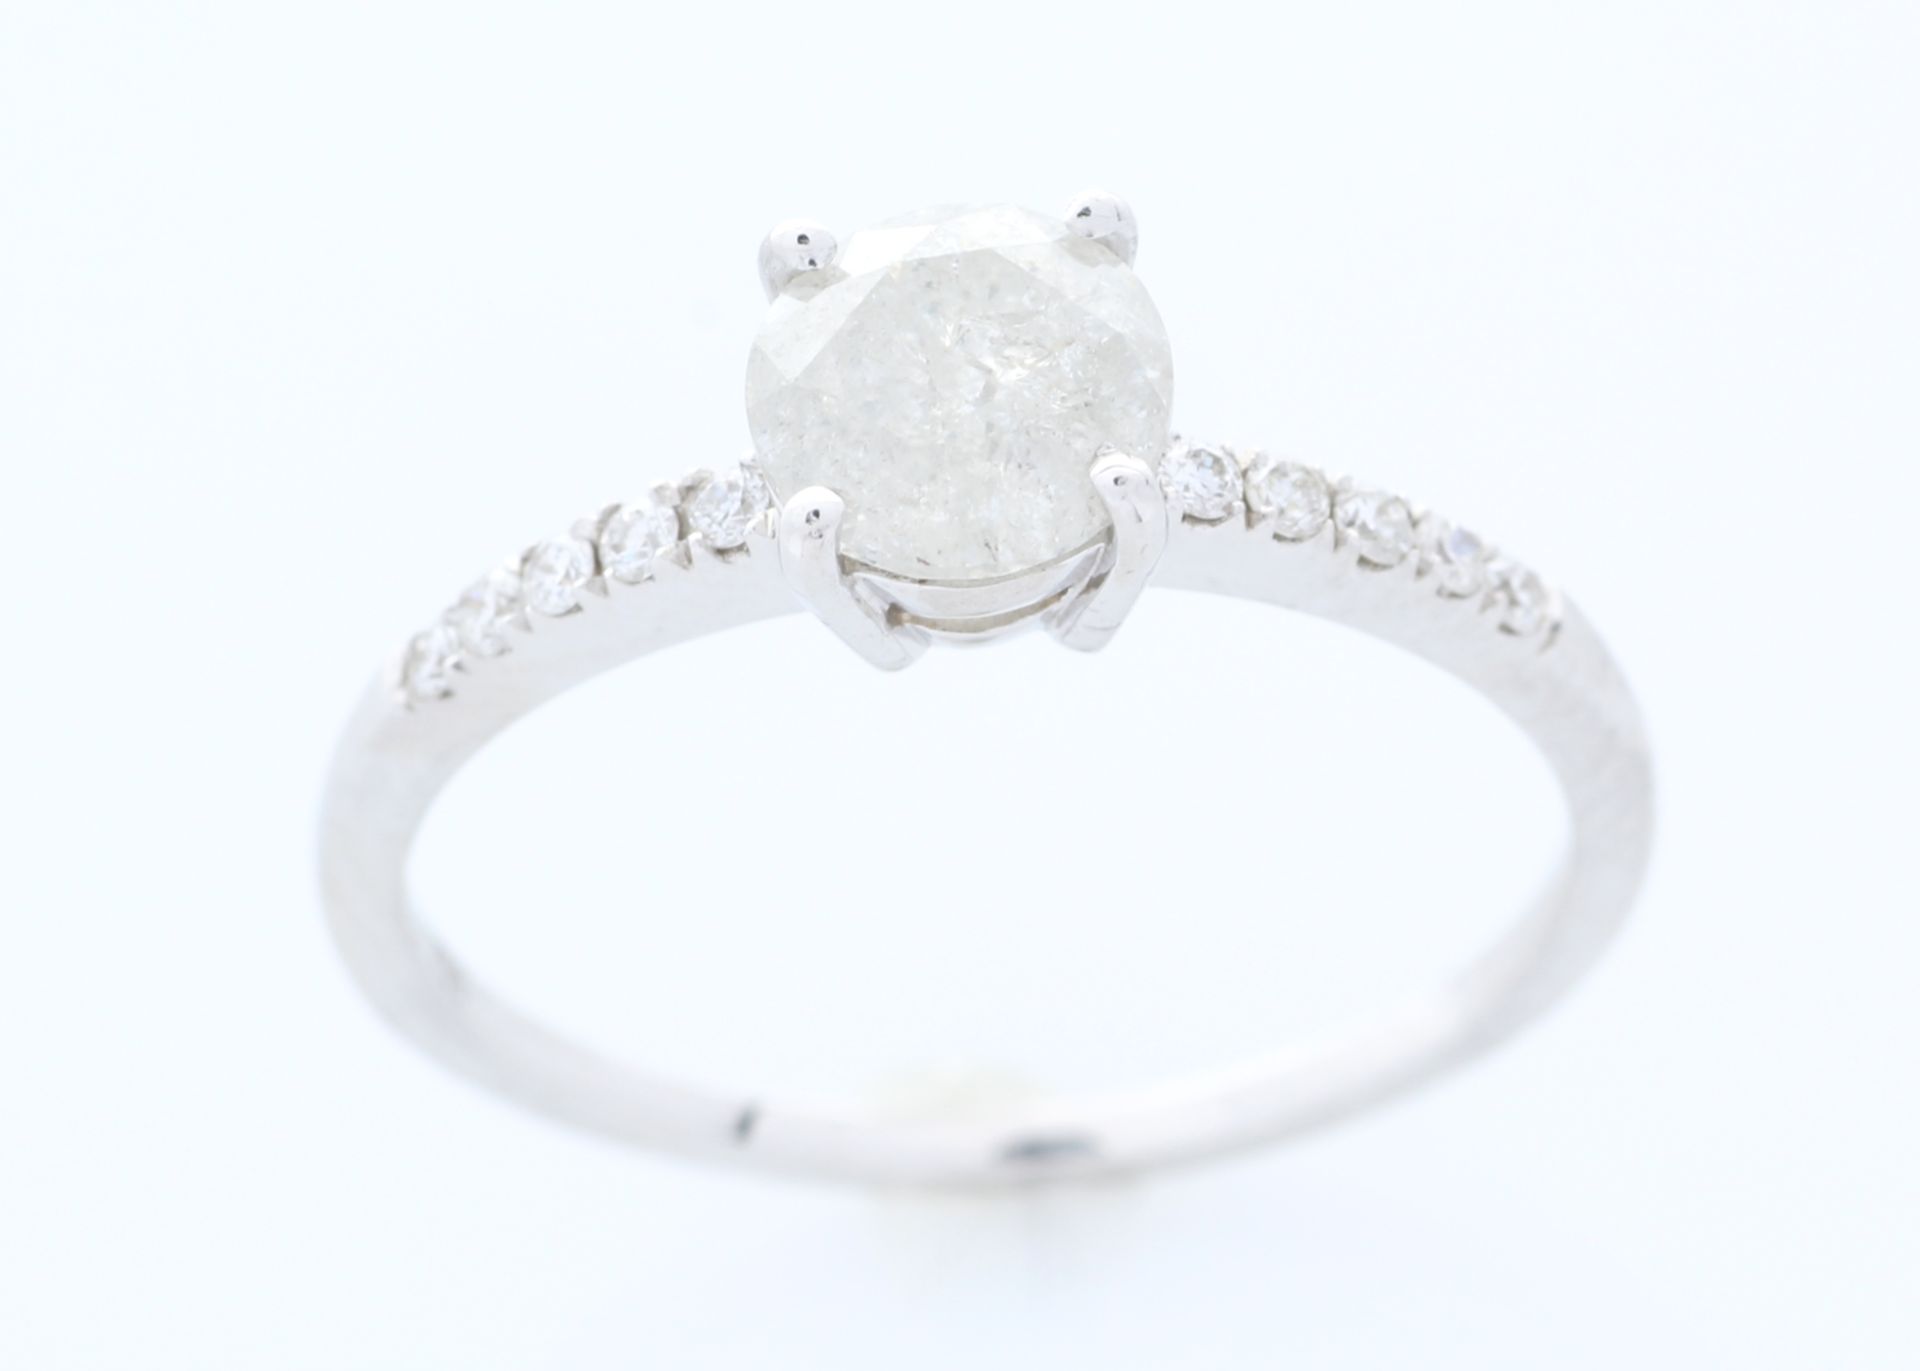 18k White Gold Single Stone Prong Set With Stone Set Shoulders Diamond Ring (0.94) 1.04 - Image 3 of 4